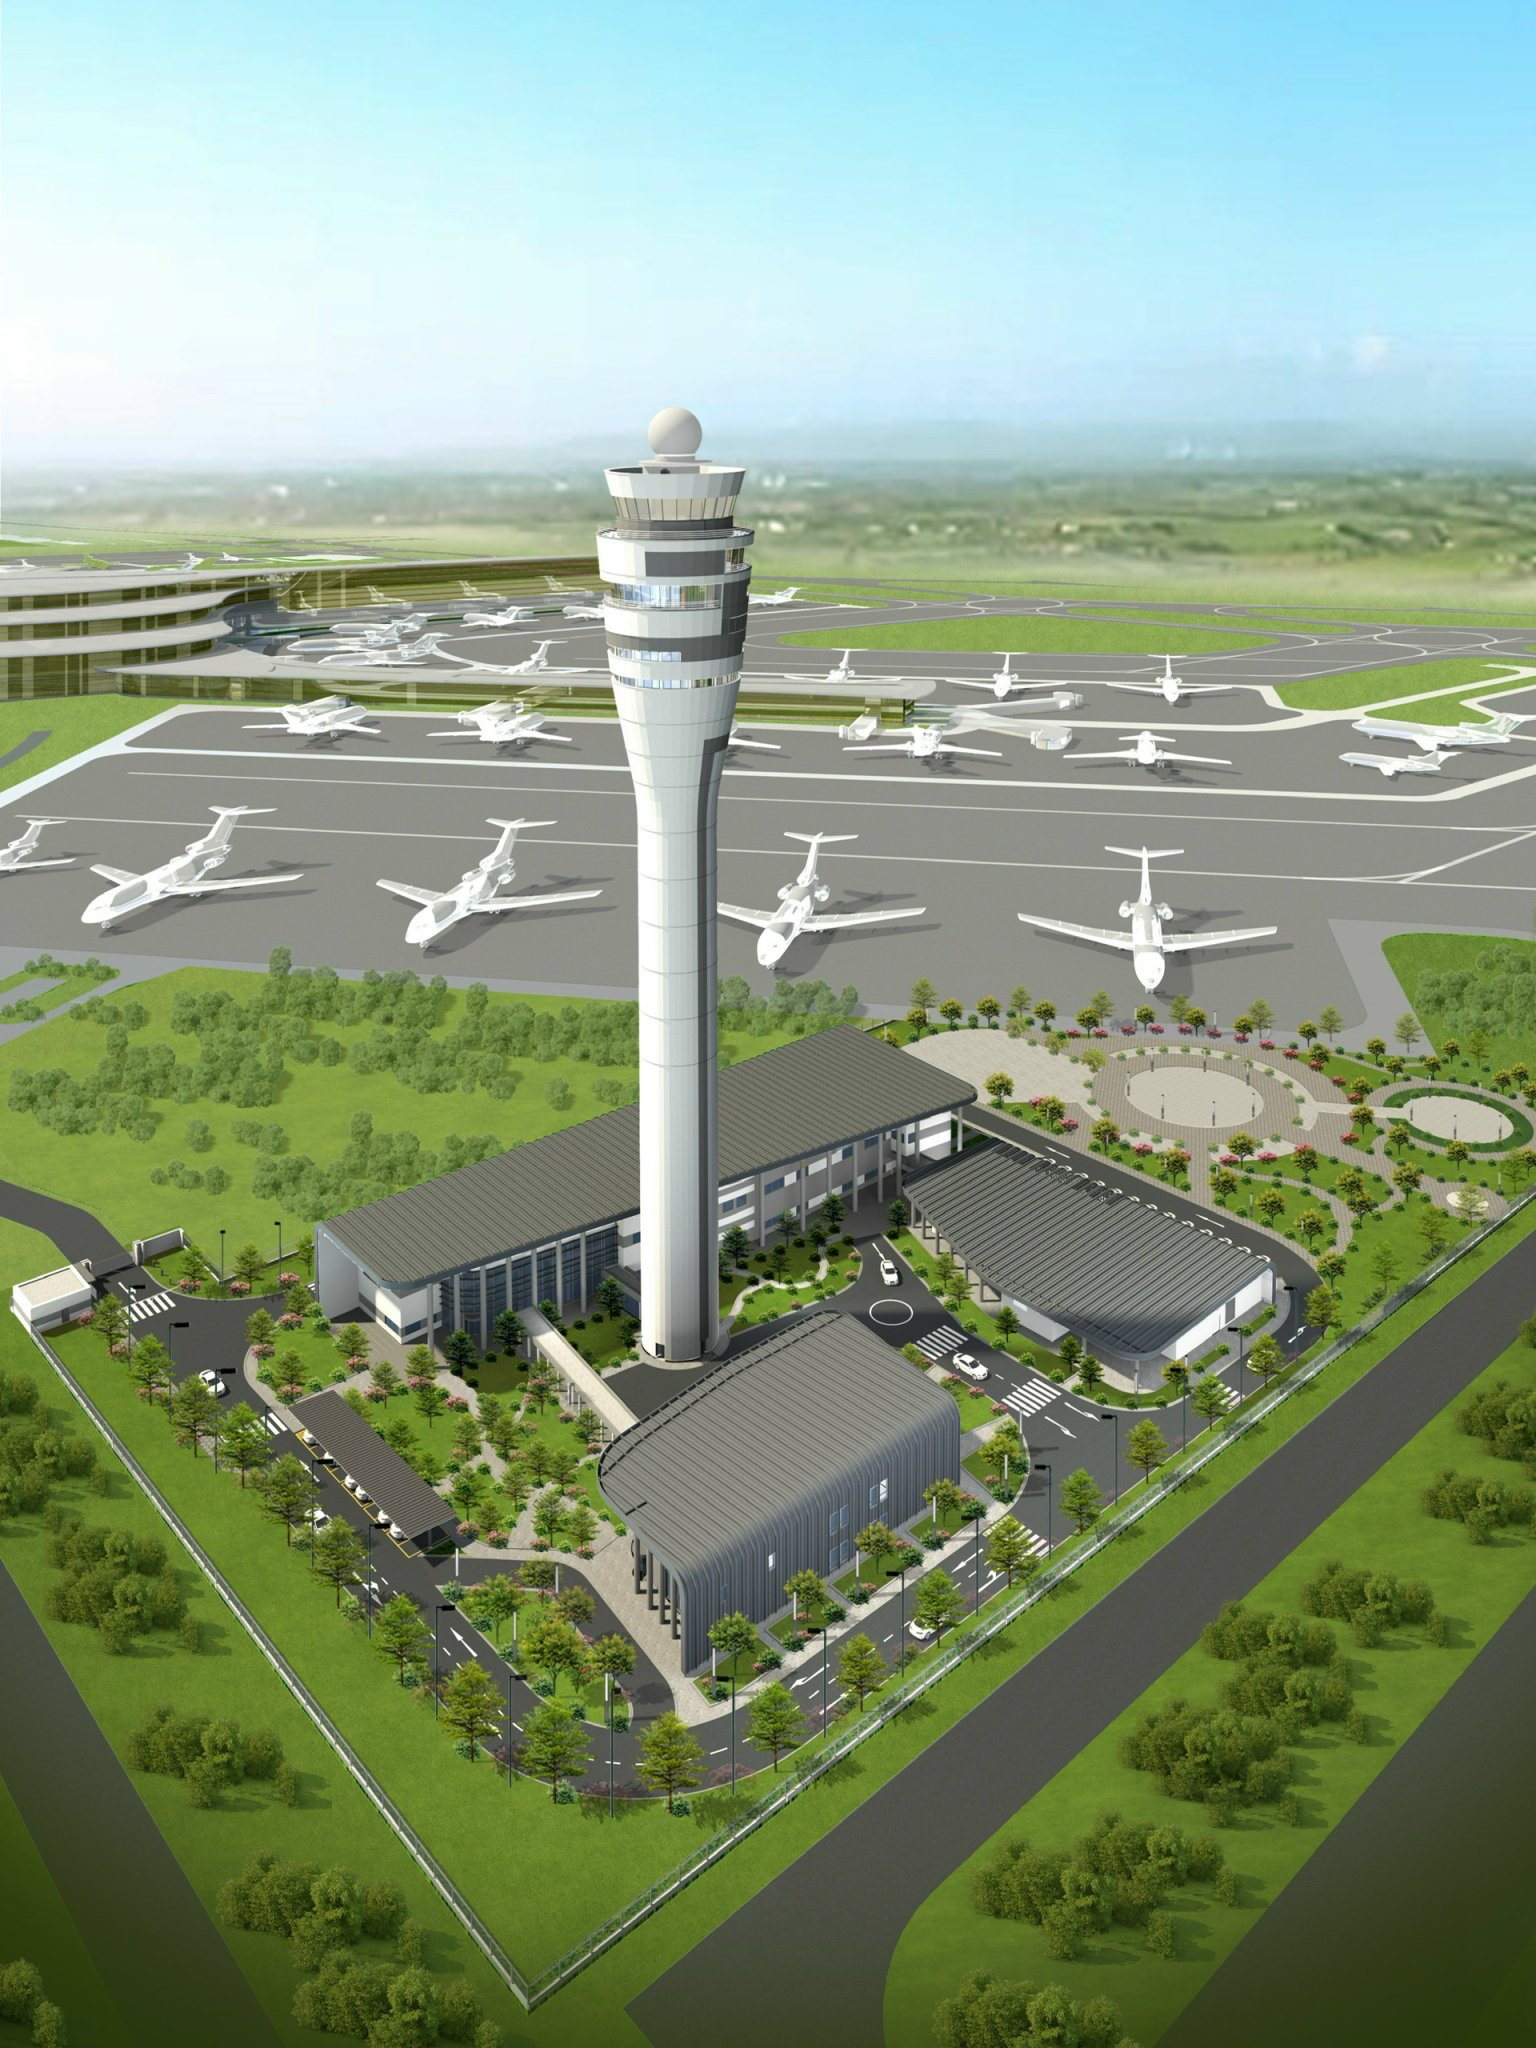 THÔNG TIN BÁO CHÍ: Khởi công Dự án thành phần 2 - Cảng hàng không quốc tế Long Thành giai đoạn 1 “Các công trình phục vụ Quản lý bay”